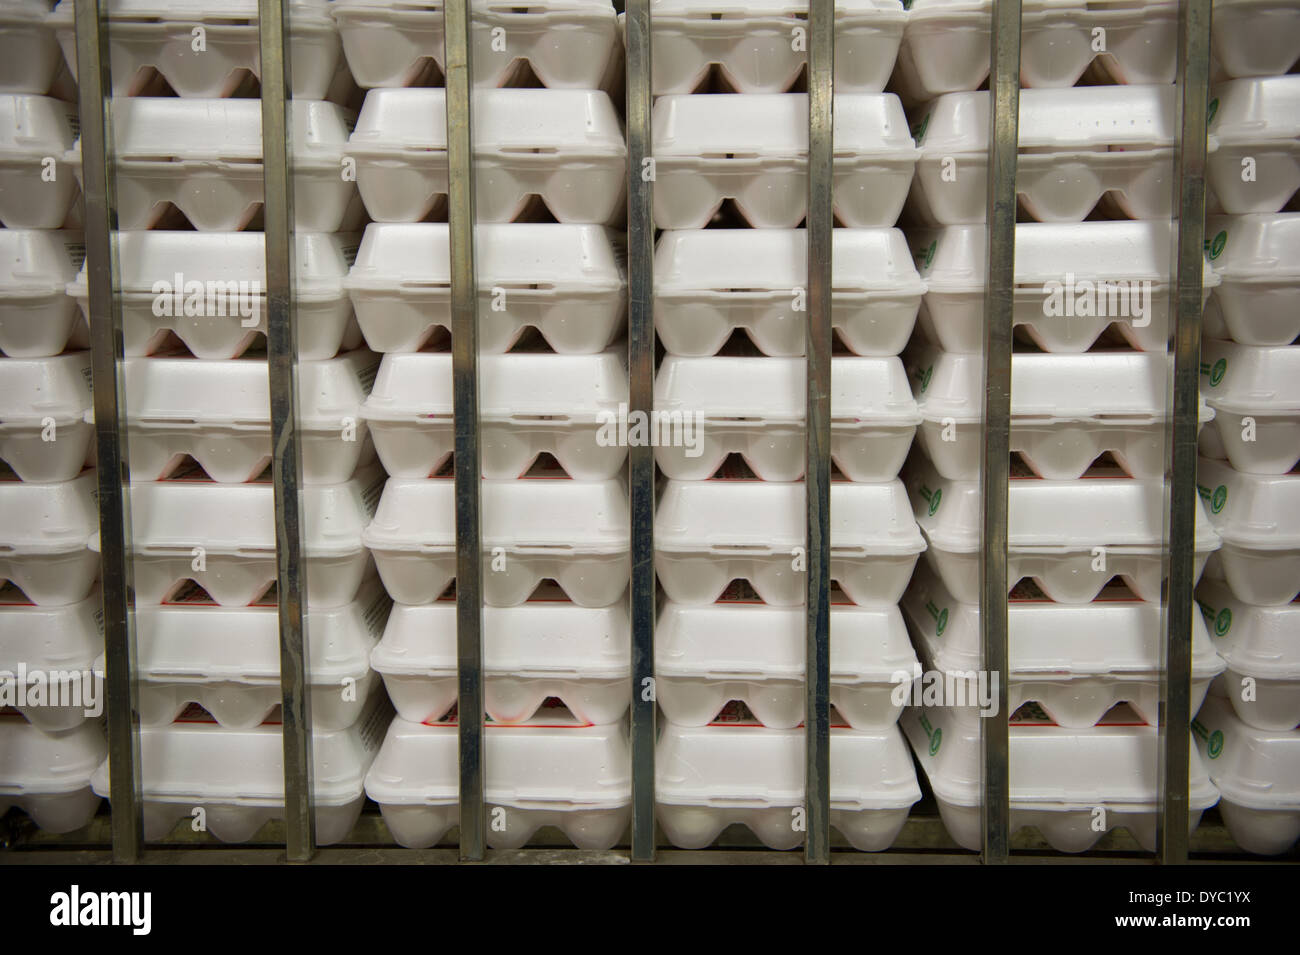 Los huevos clasificados en cartones en una granja comercial de huevos de producción convencional Foto de stock